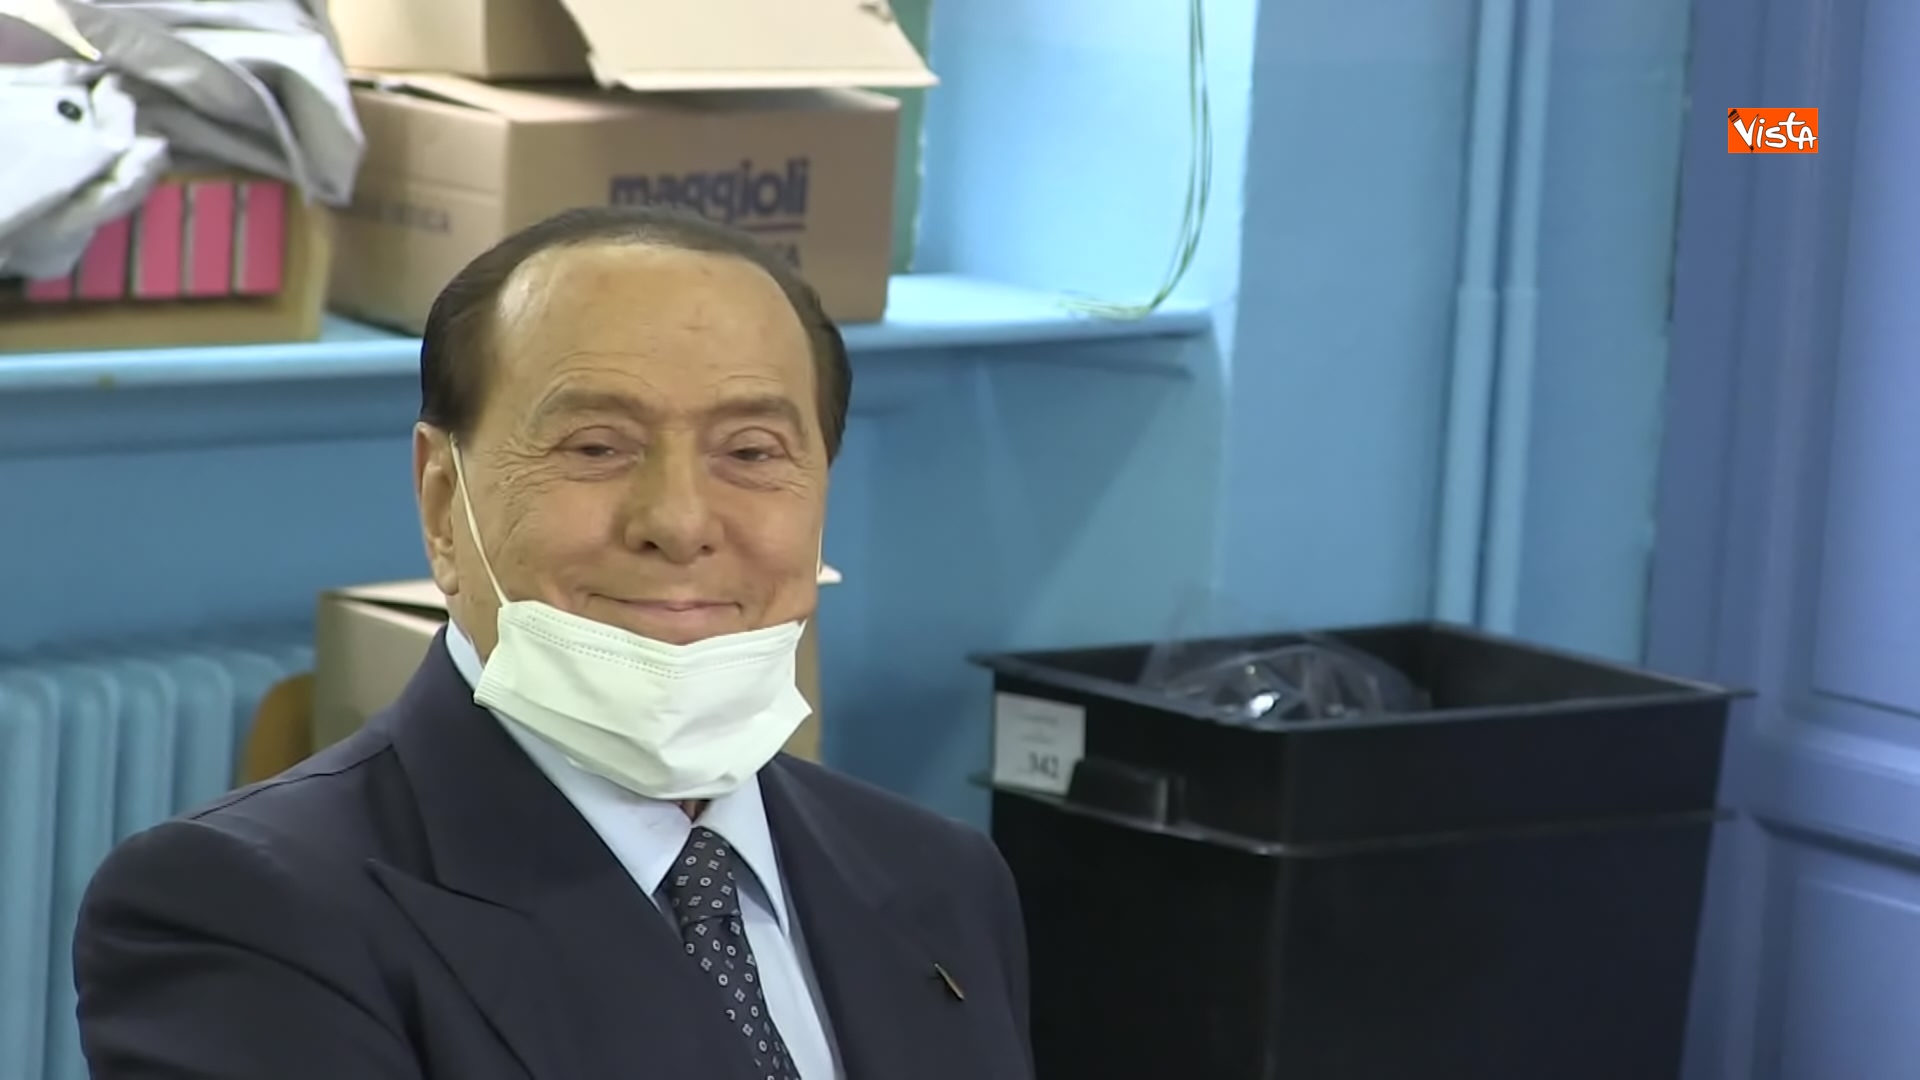 03-10-21 Silvio Berlusconi a Milano per votare alle amministrative Le immagini 01_024261747195519281054